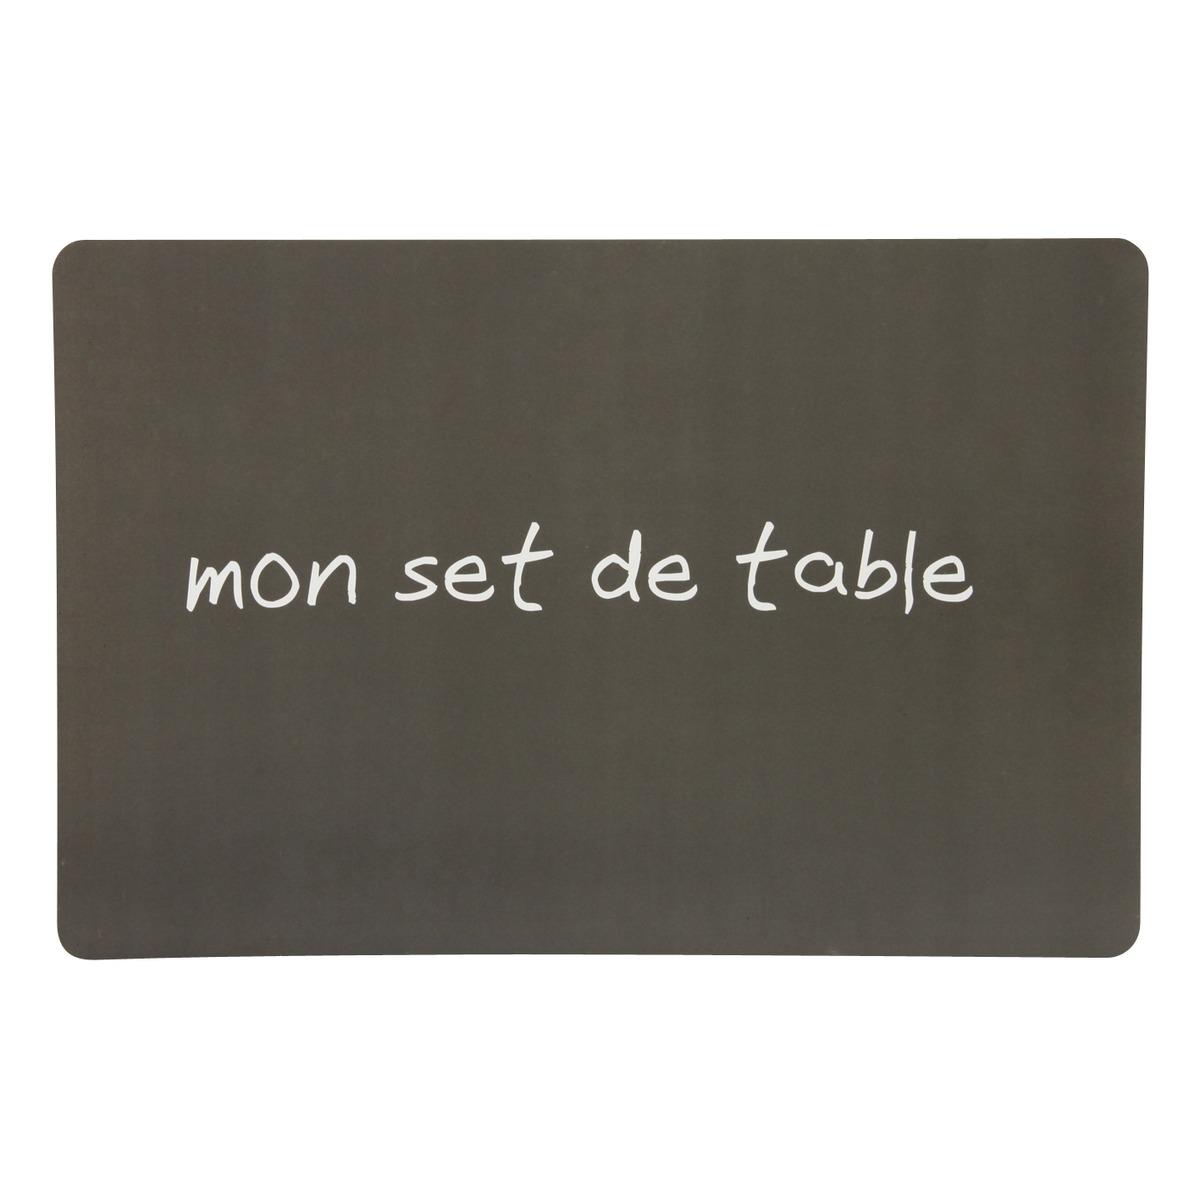 Set de table opaque - 30 x 45 cm - Thème texte - Gris